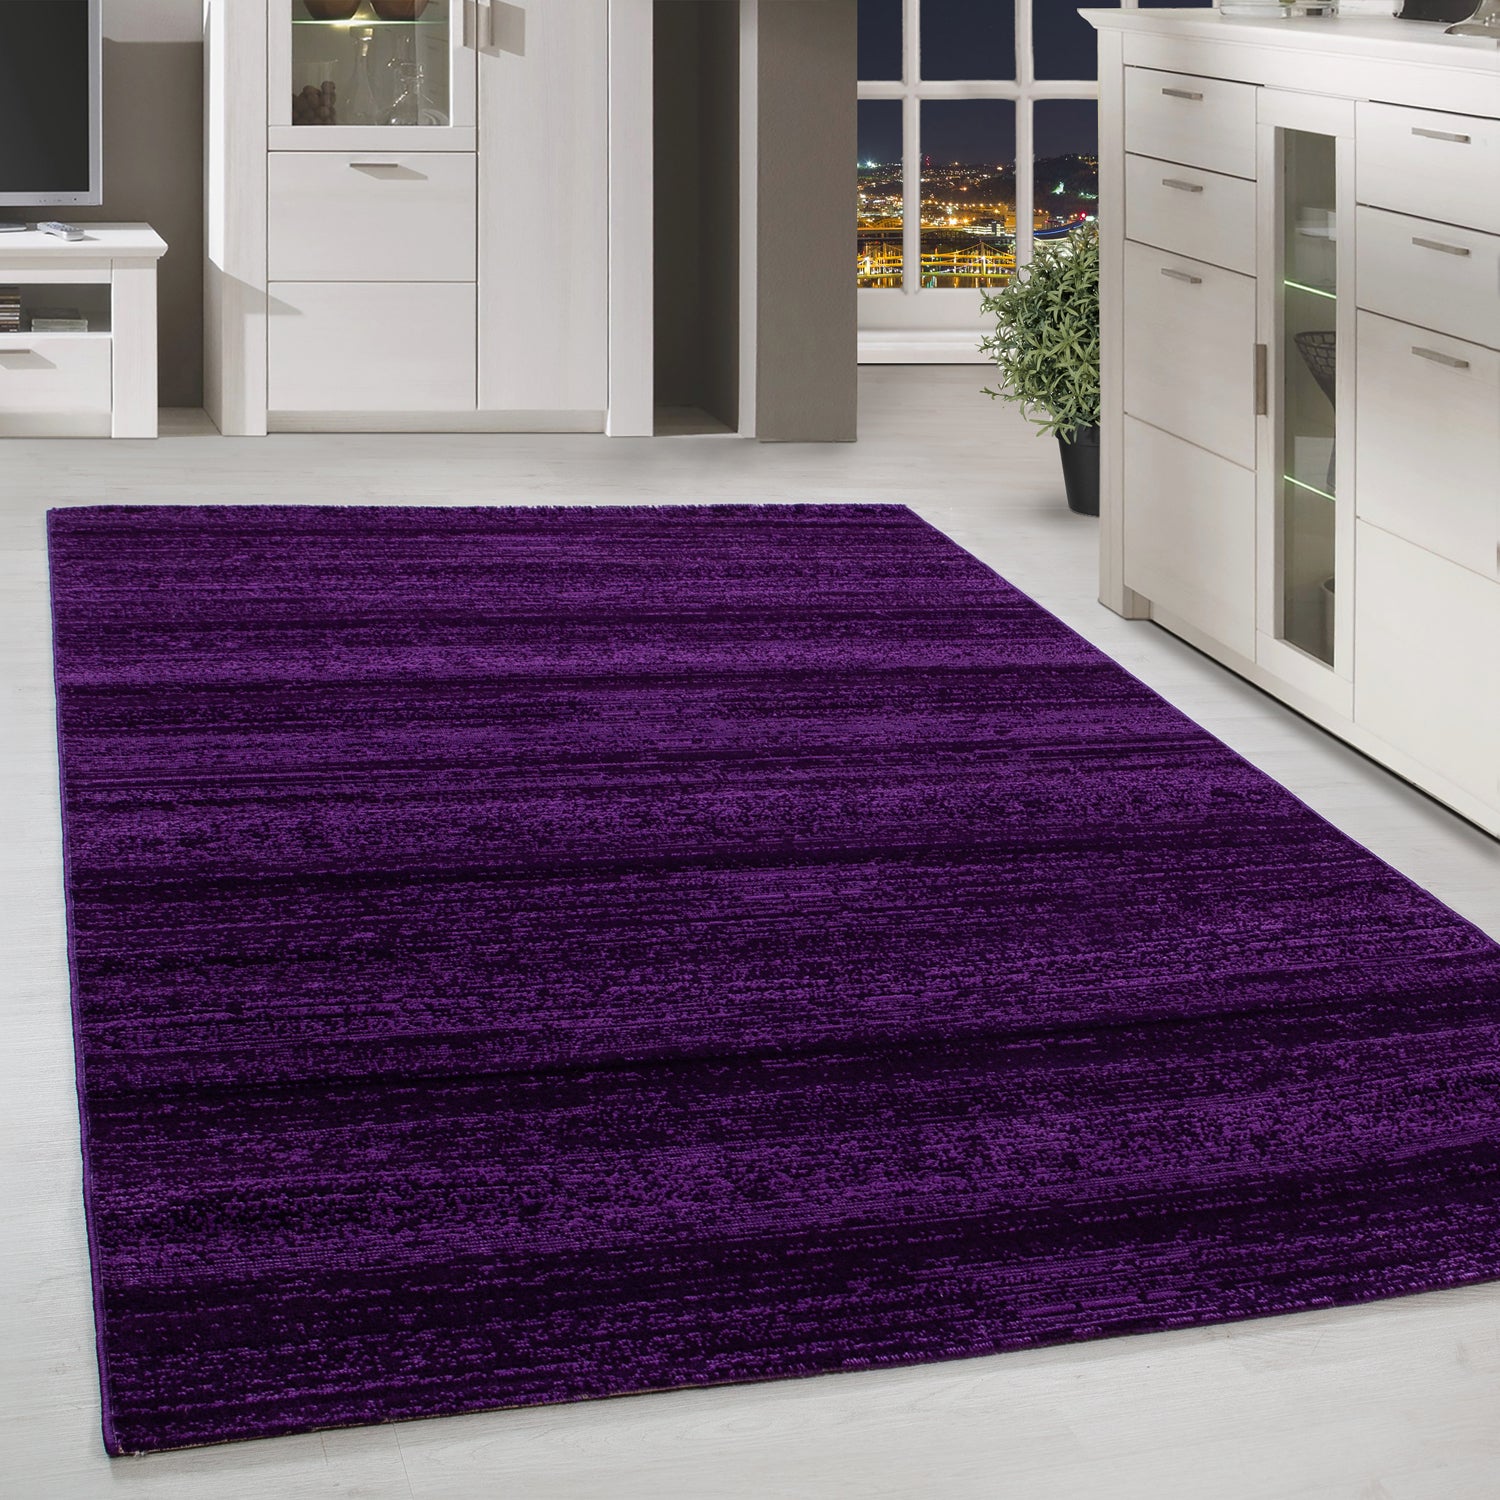 Kurzflor Design Teppich Einfarbig Streifen Muster Lila Meliert Wohnzimmerteppich